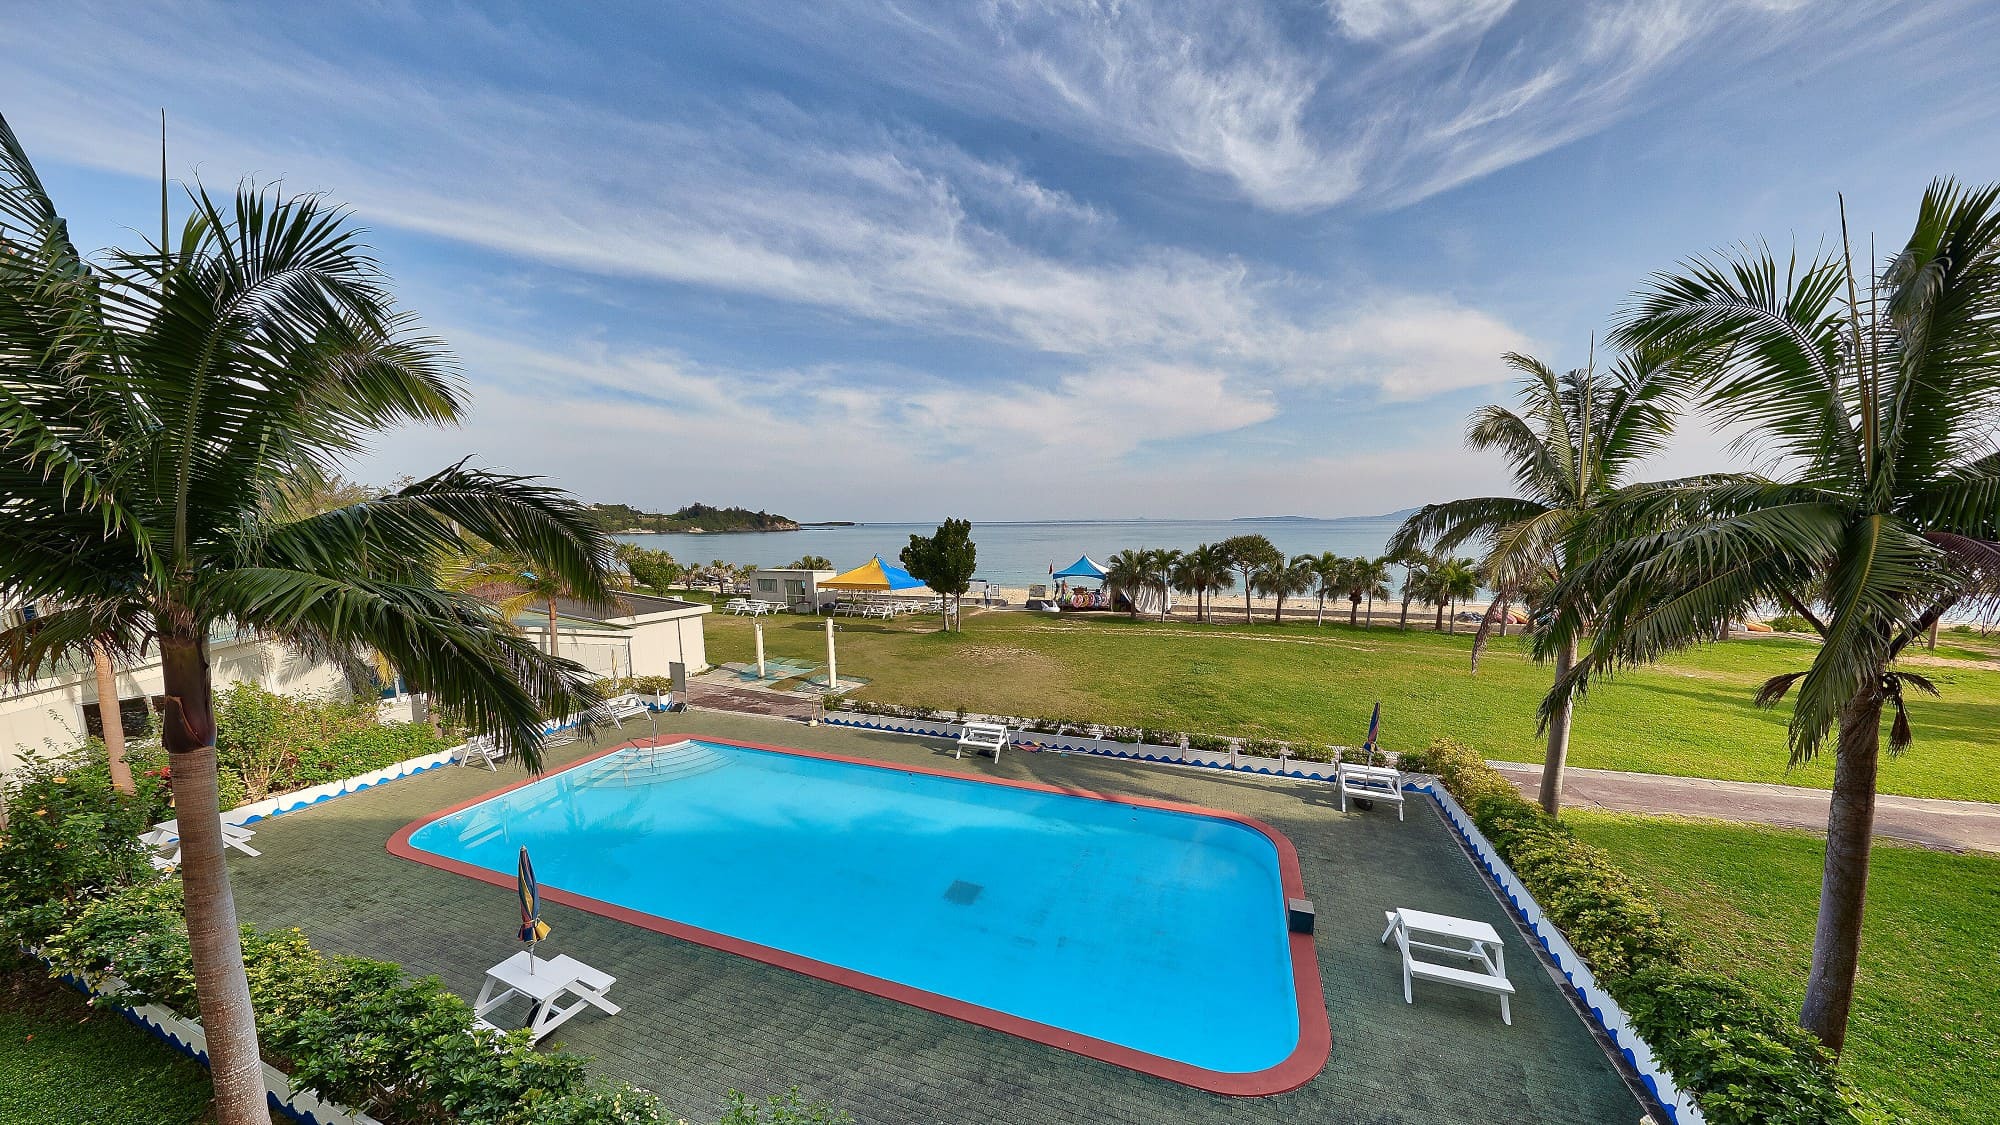  屋外プール/ご宿泊者専用の屋外プールで沖縄の風を感じながらひと泳ぎ♪